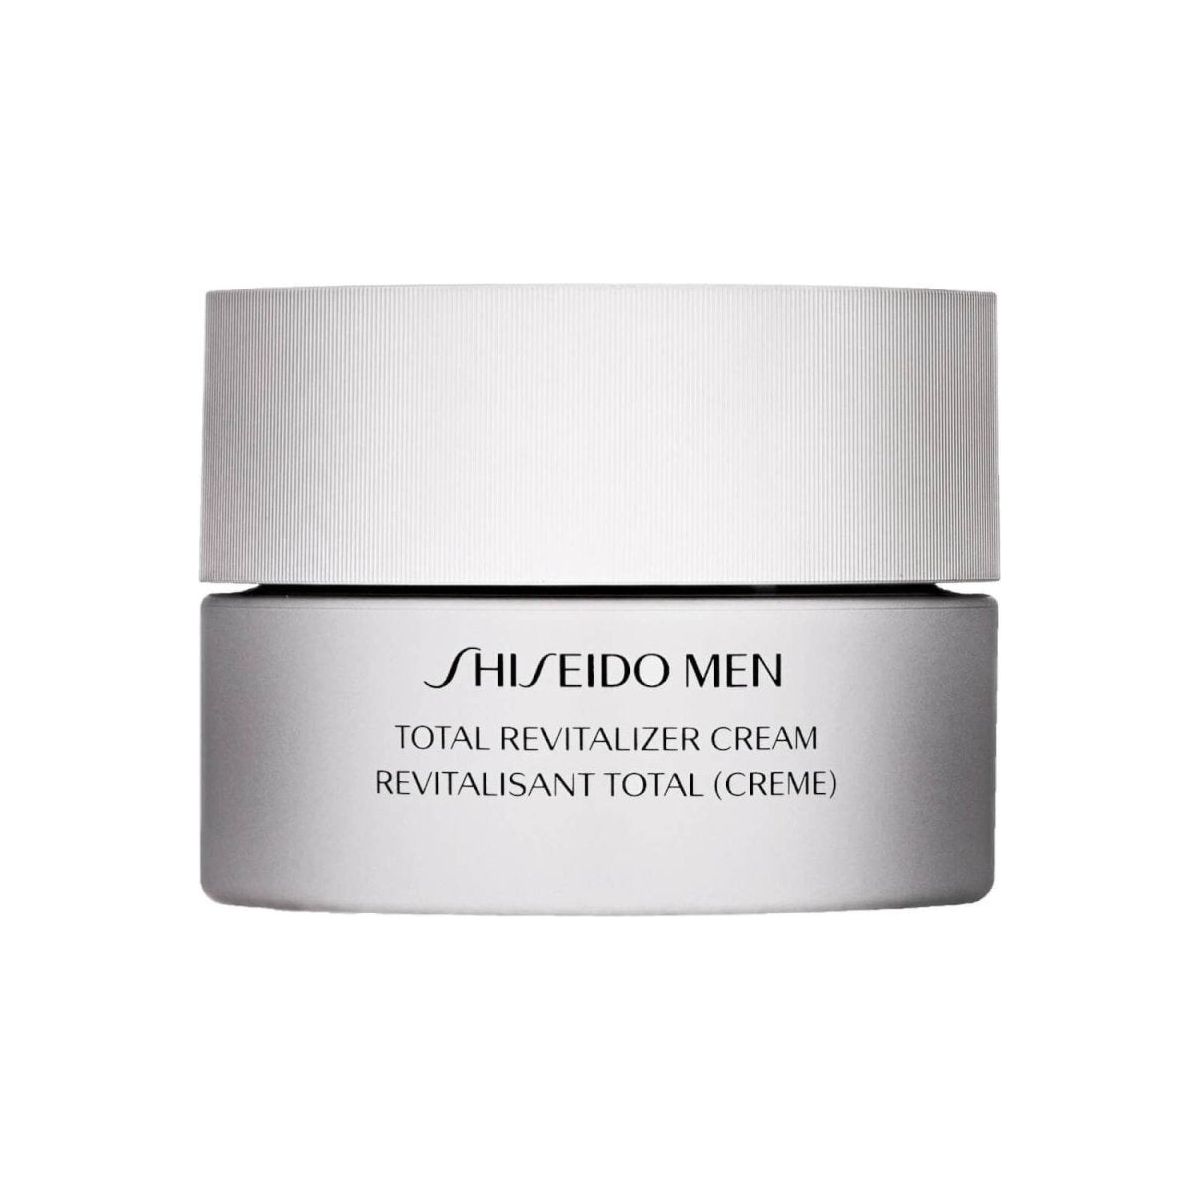 Shiseido Men Total Revitalizer Cream 50ml - Glam Global UK